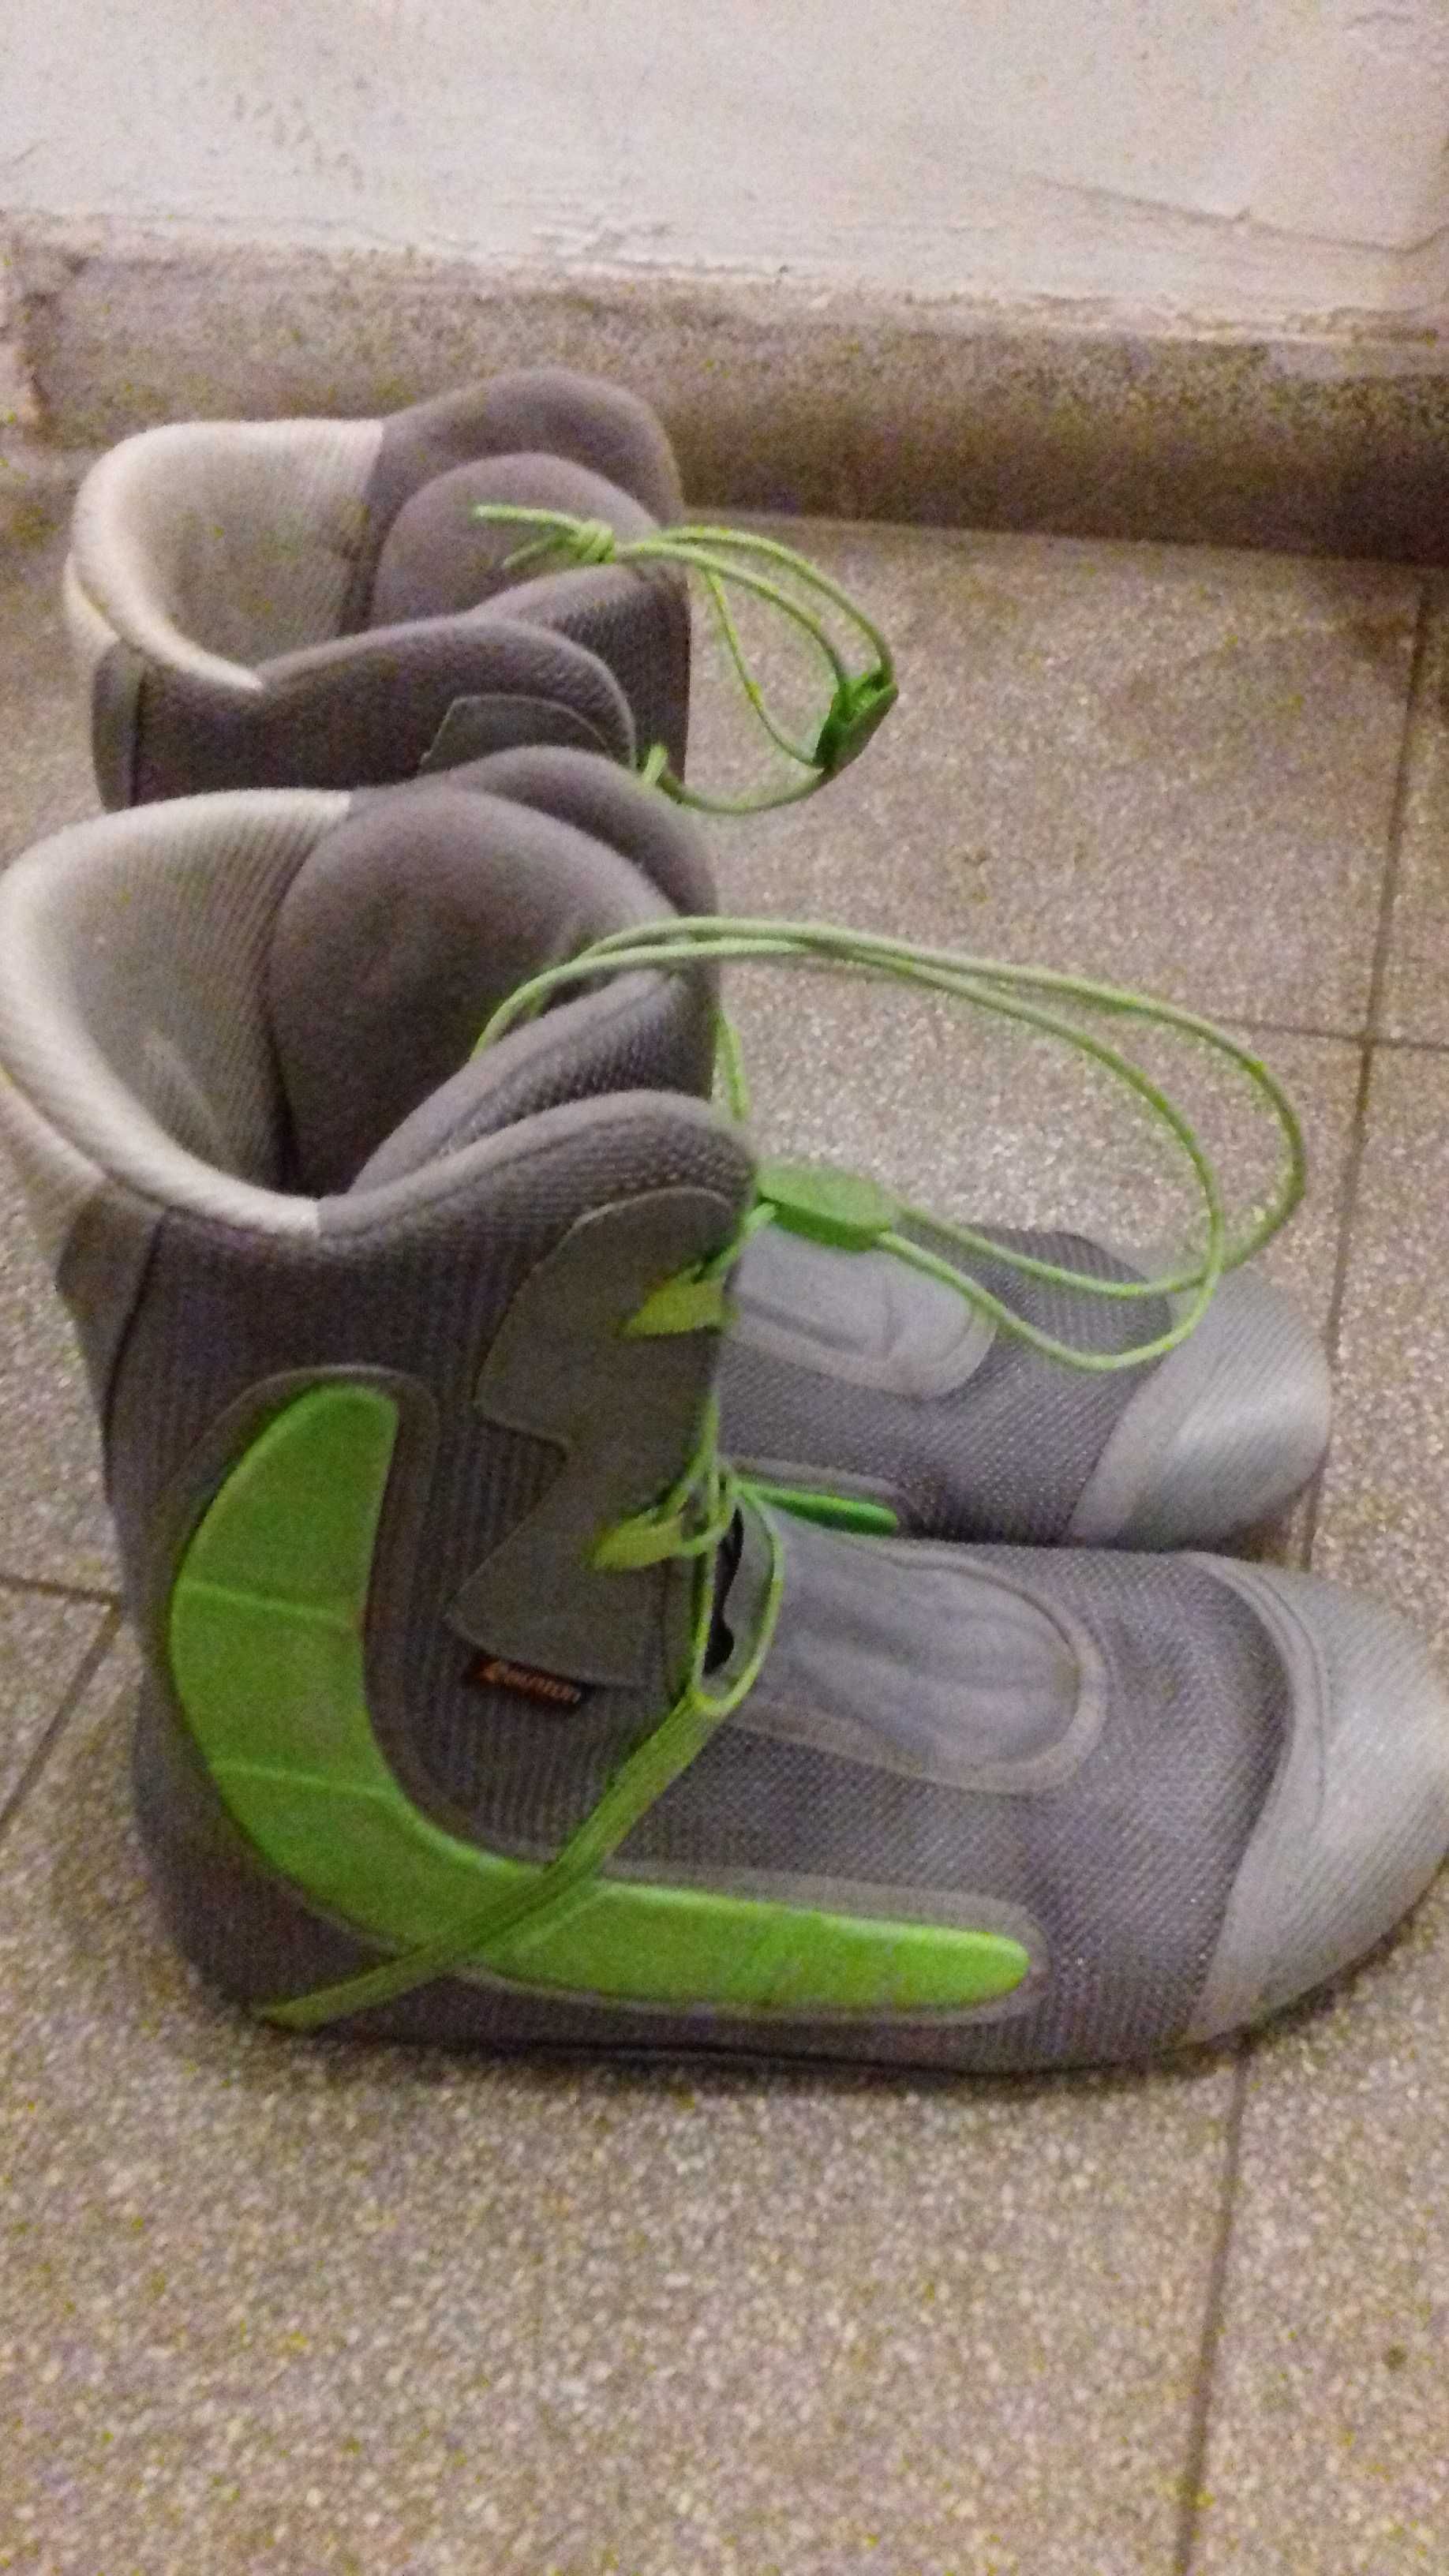 wkładki do butów snowboardowych rozmiar 45 - 30 cm